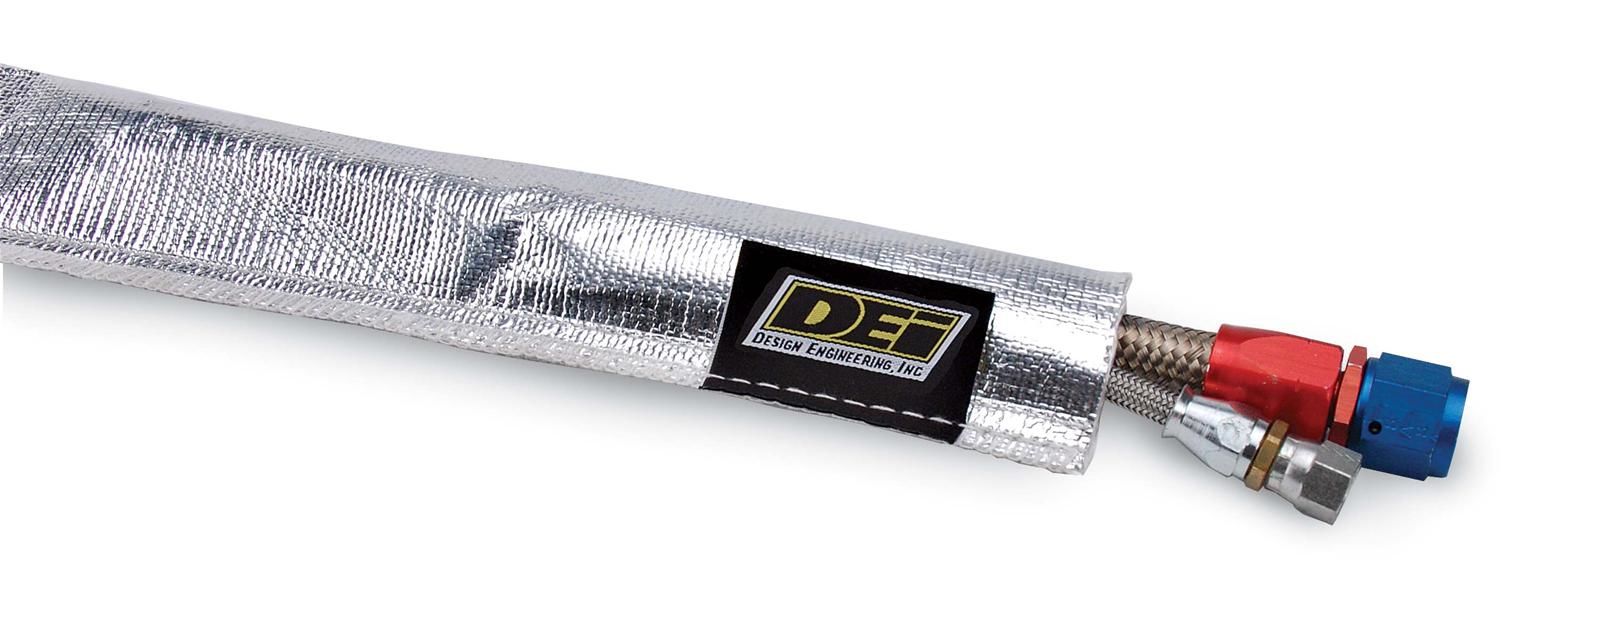 DEI 10418 - Heat Sheath, Aluminized Sleeving 0.5in ID x 3ft